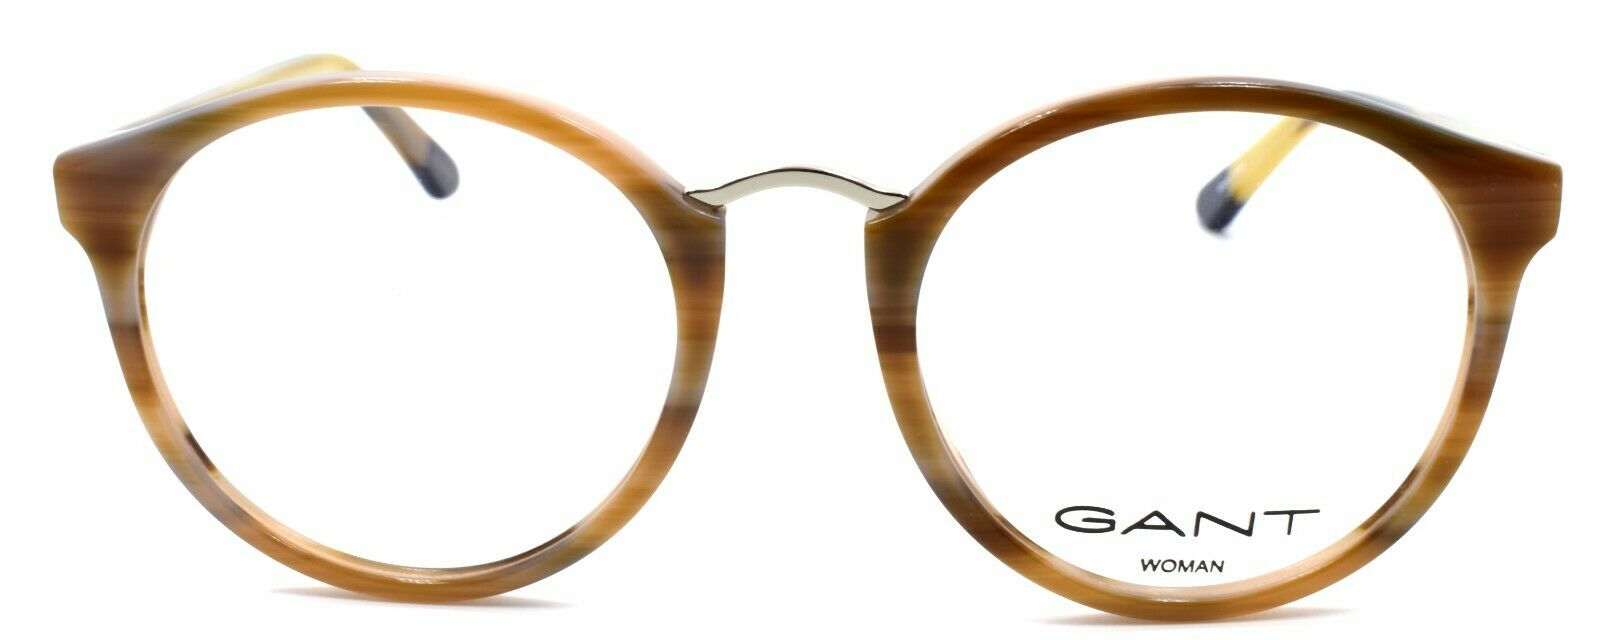 2-GANT GA4092 062 Women's Eyeglasses Frames 49-19-140 Brown Horn-889214047175-IKSpecs